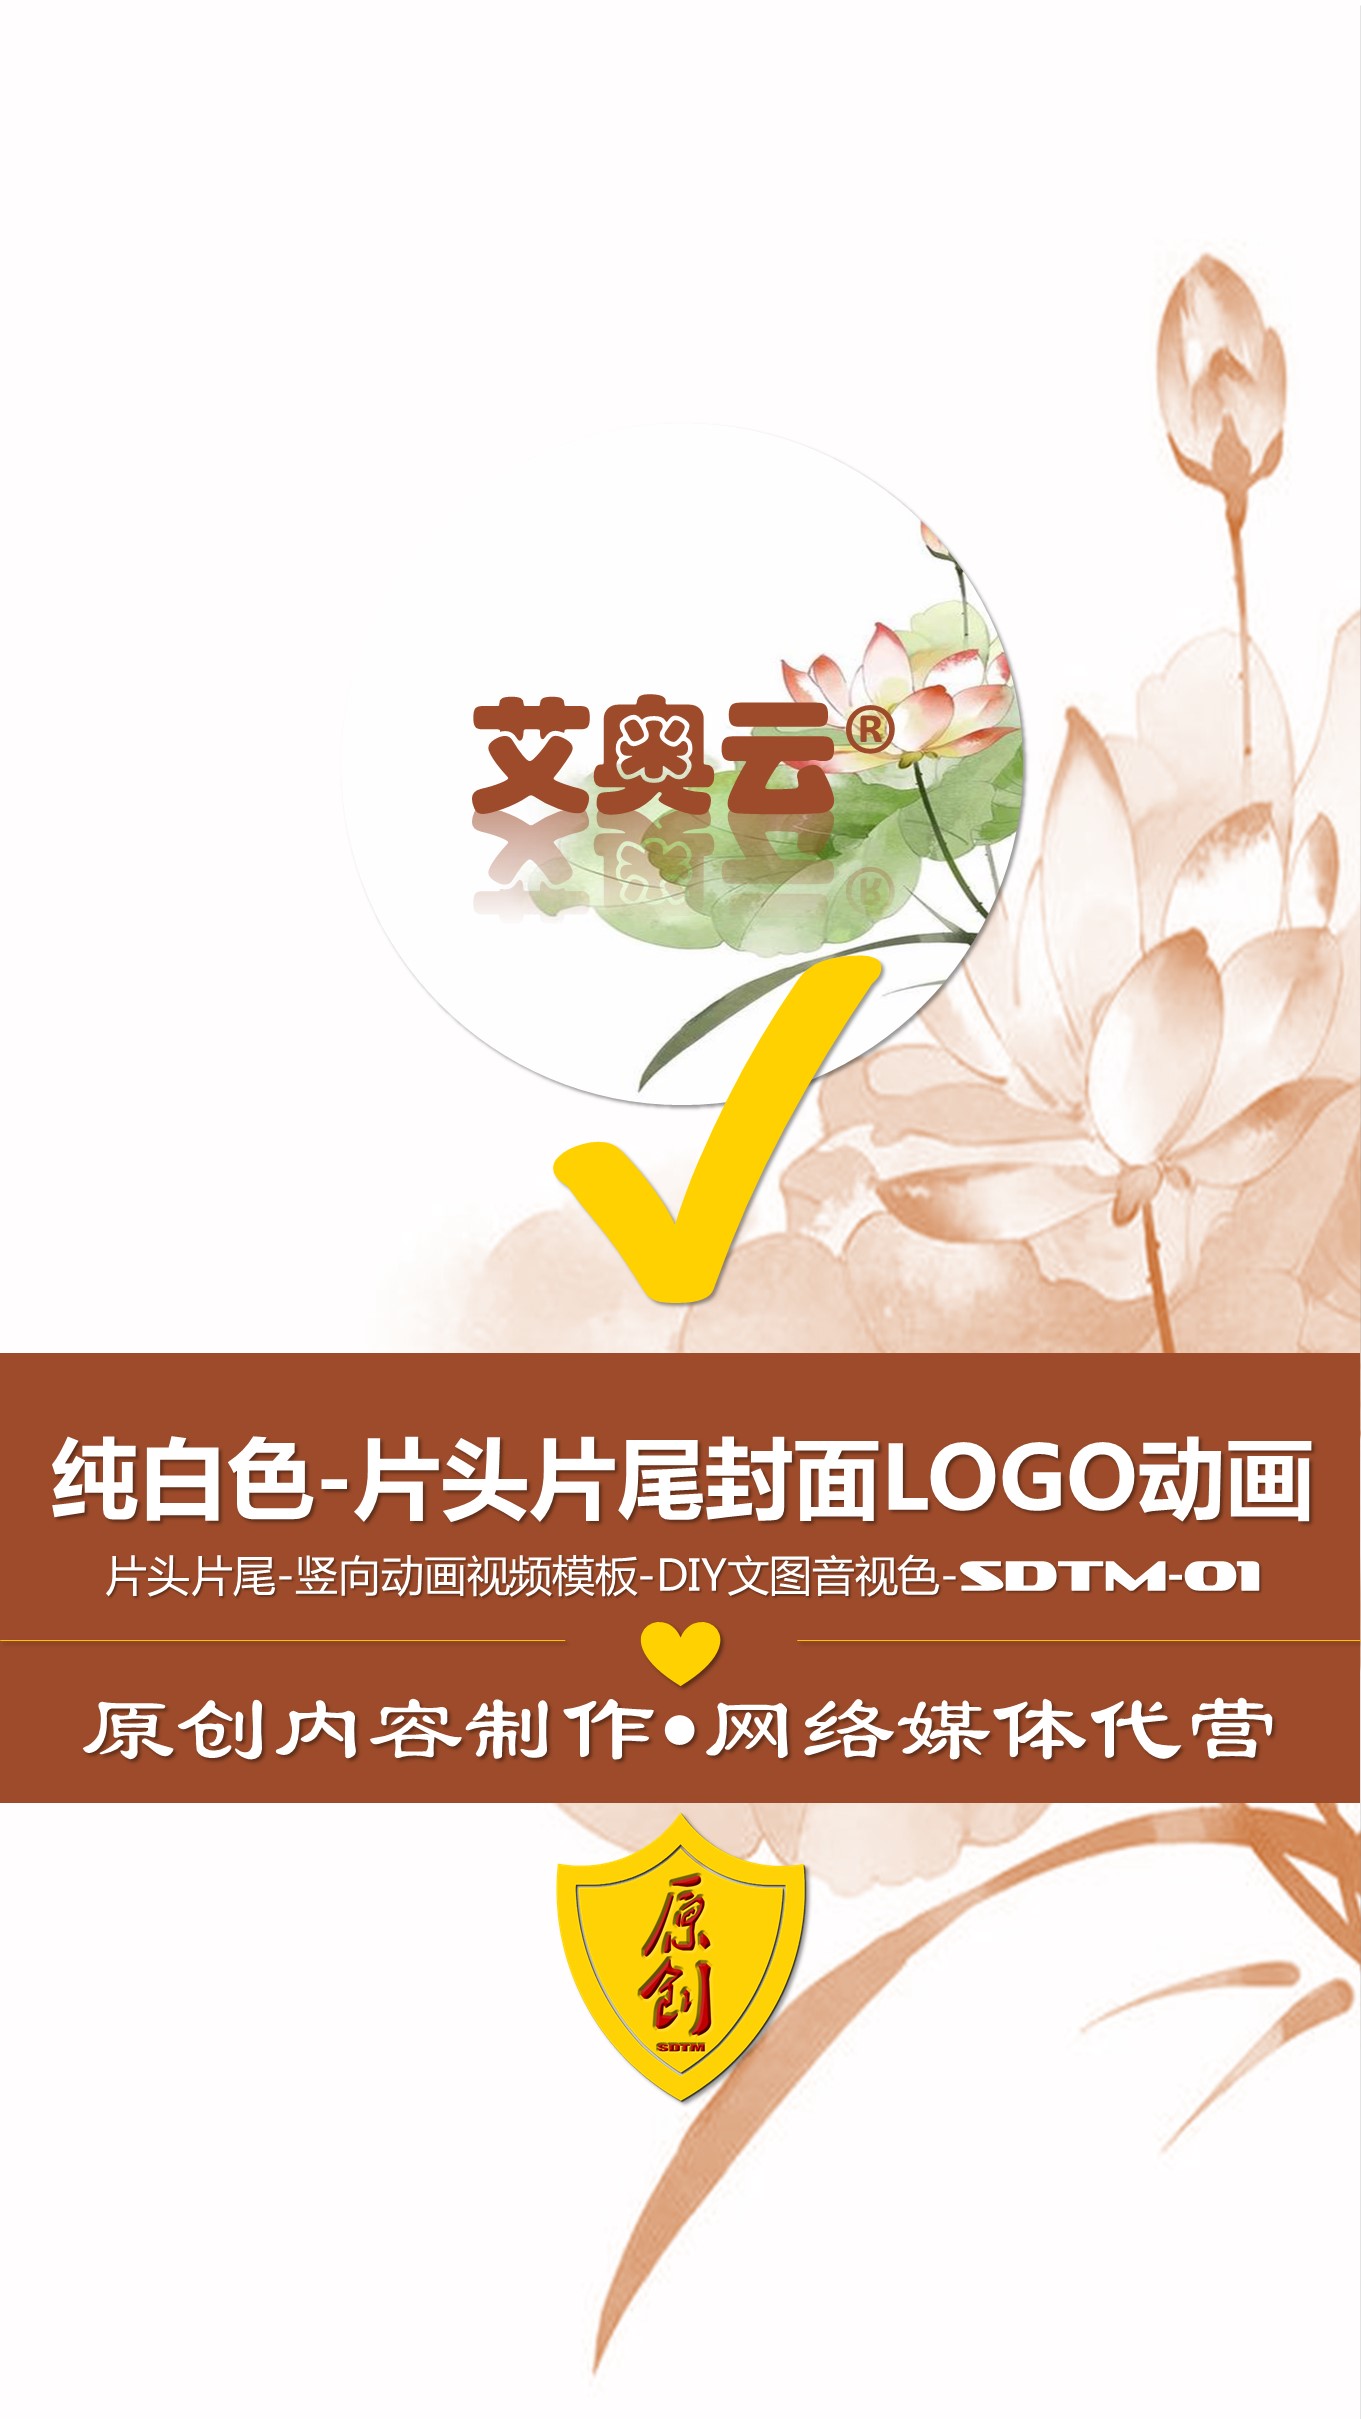 0-1纯白色片头片尾封面LOGO动画竖版 (1).JPG